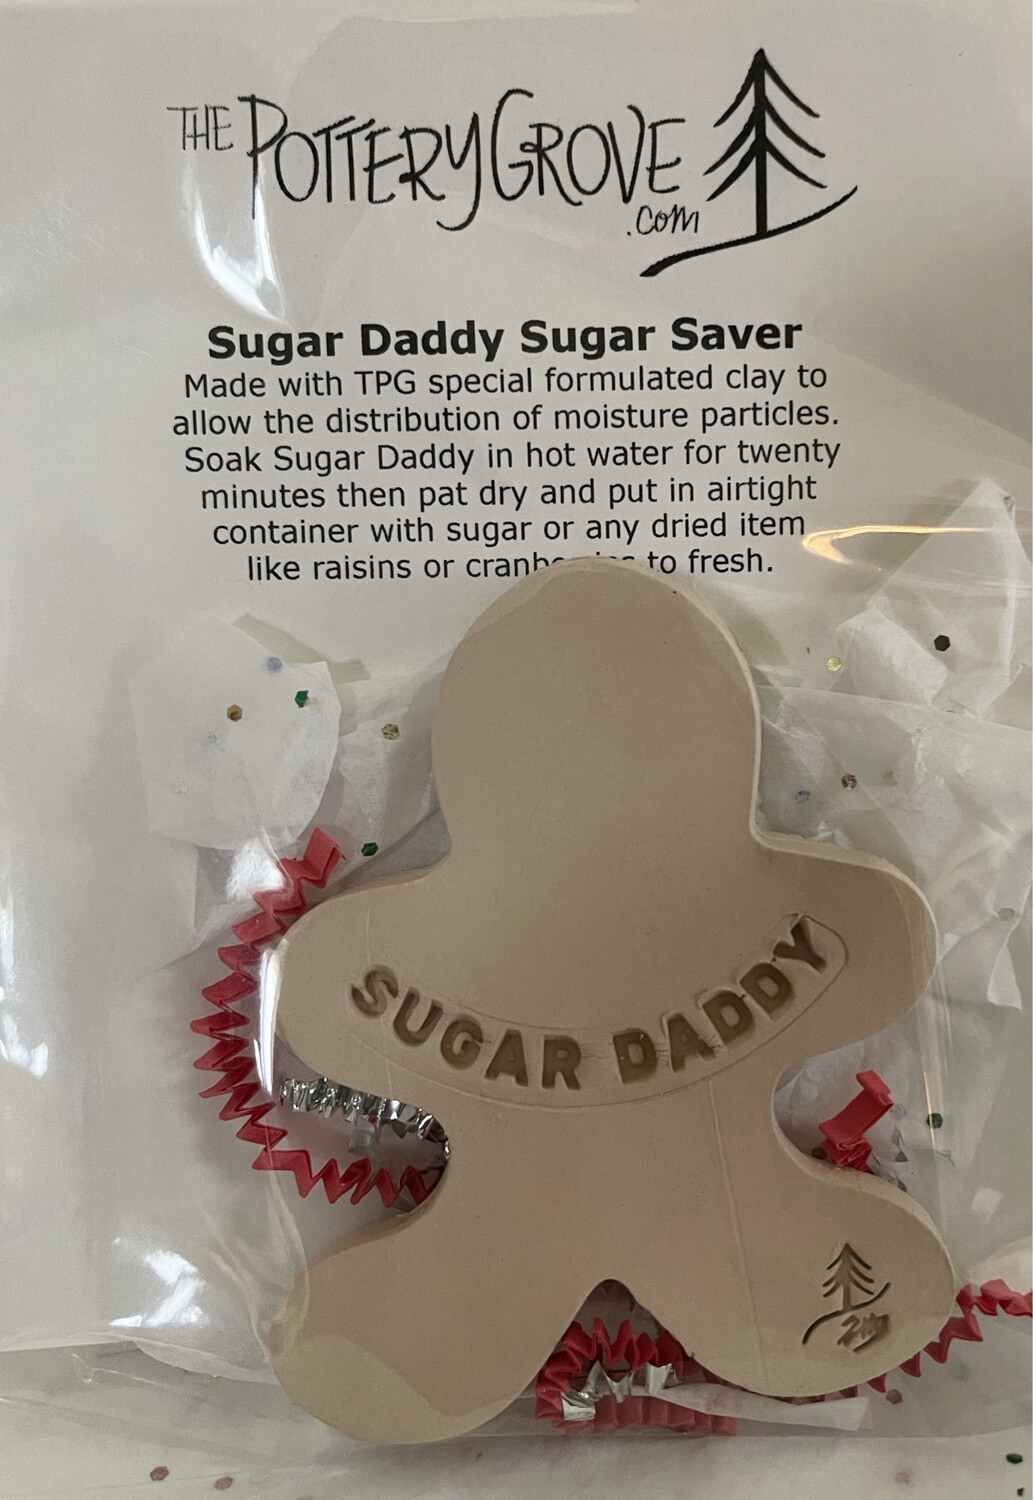 Sugar Daddy Sugar And Dried Fruit Softener